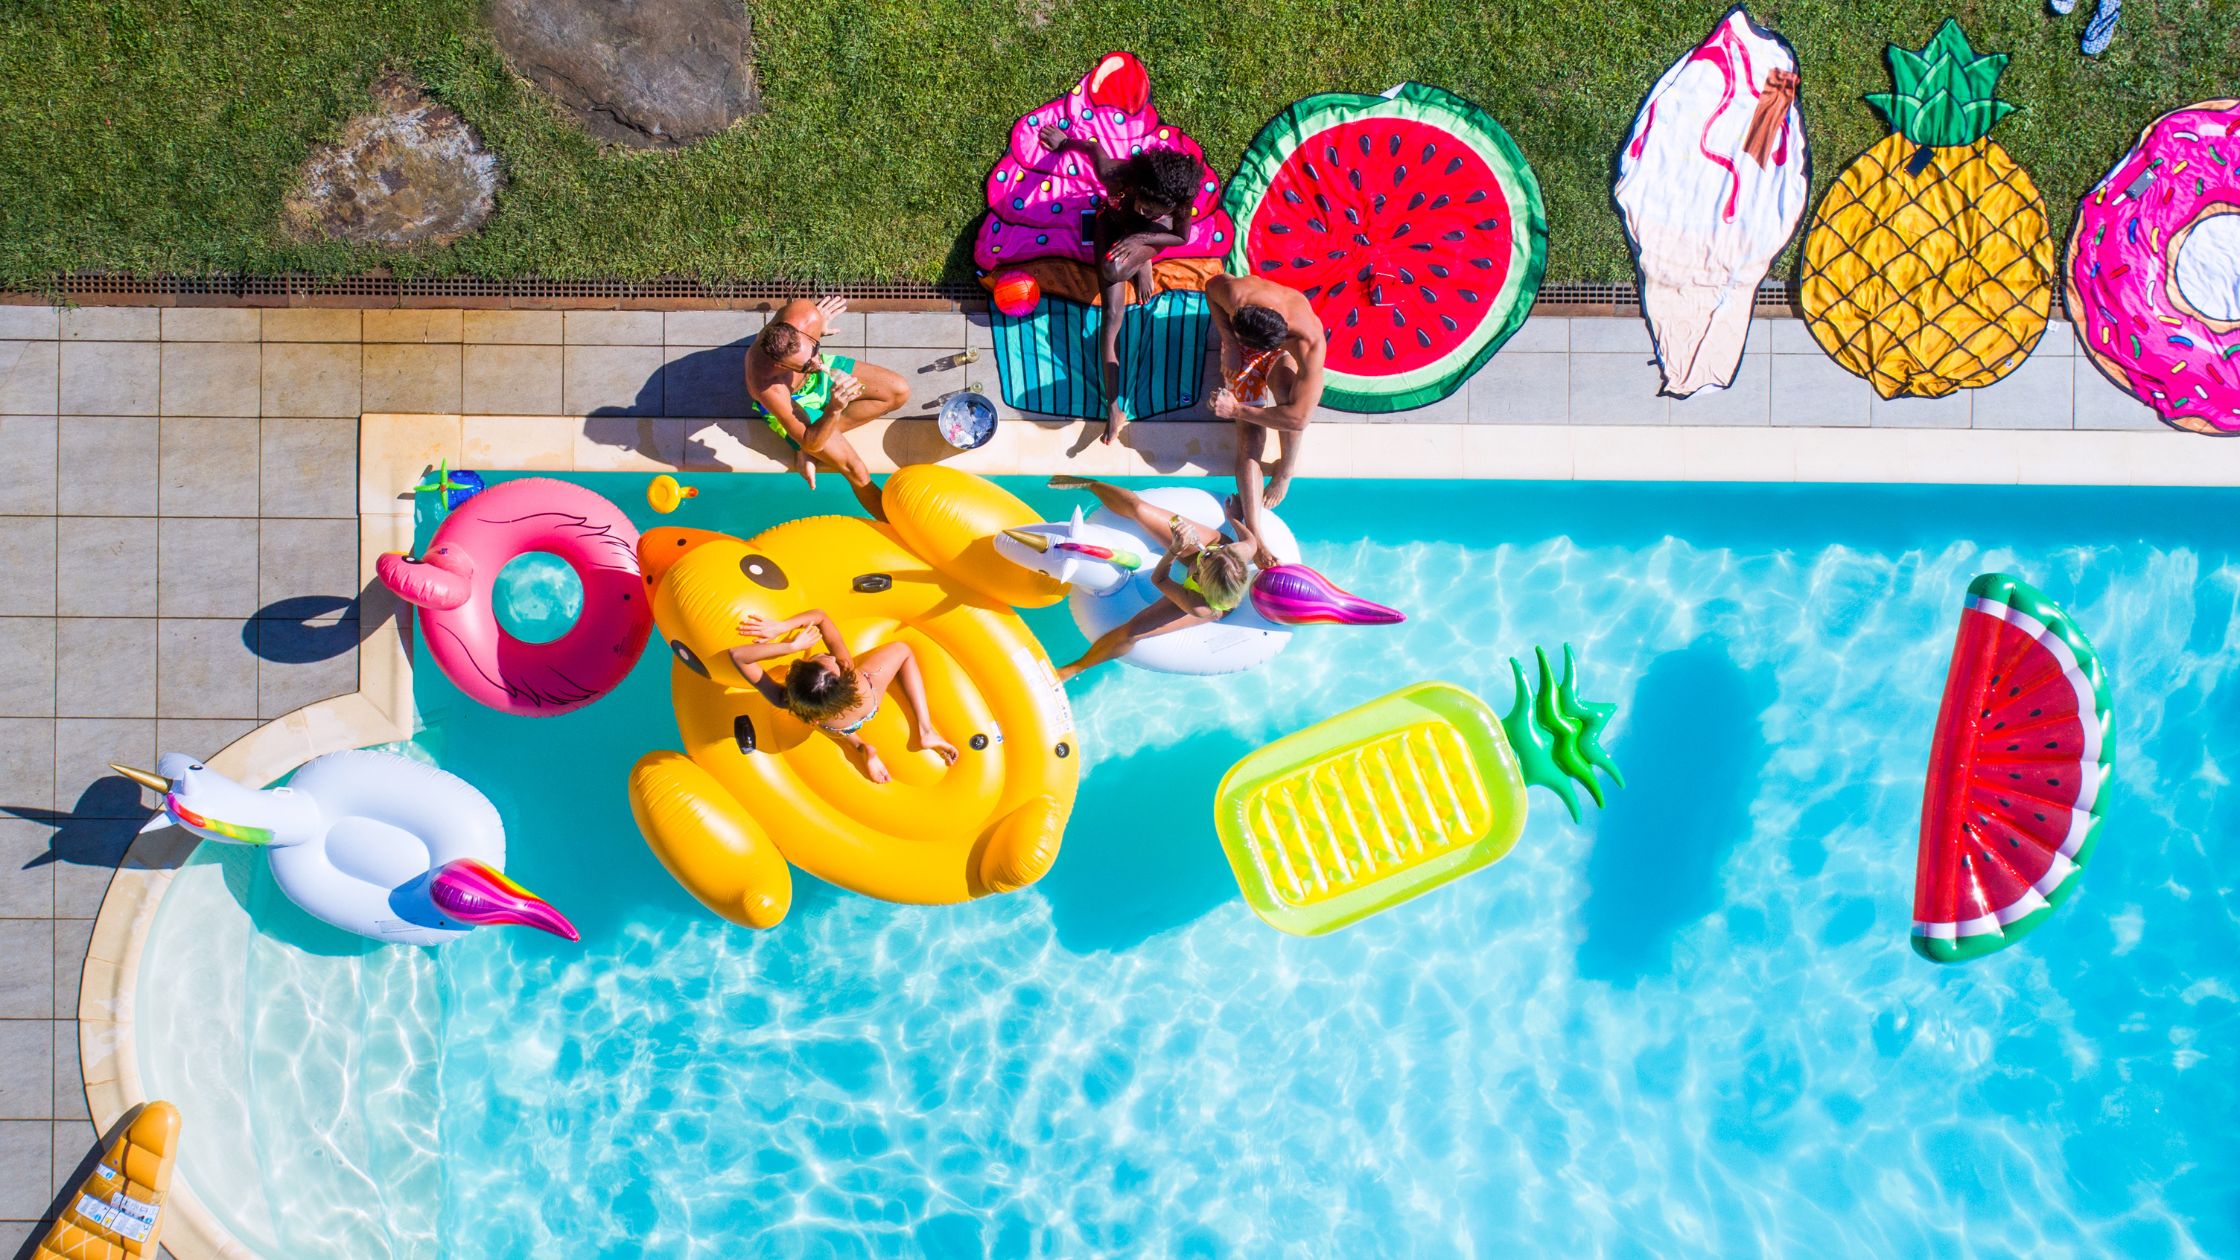 concurso de flotadores y colchonetas divertidas en una fiesta en la piscina (ideas pool party)